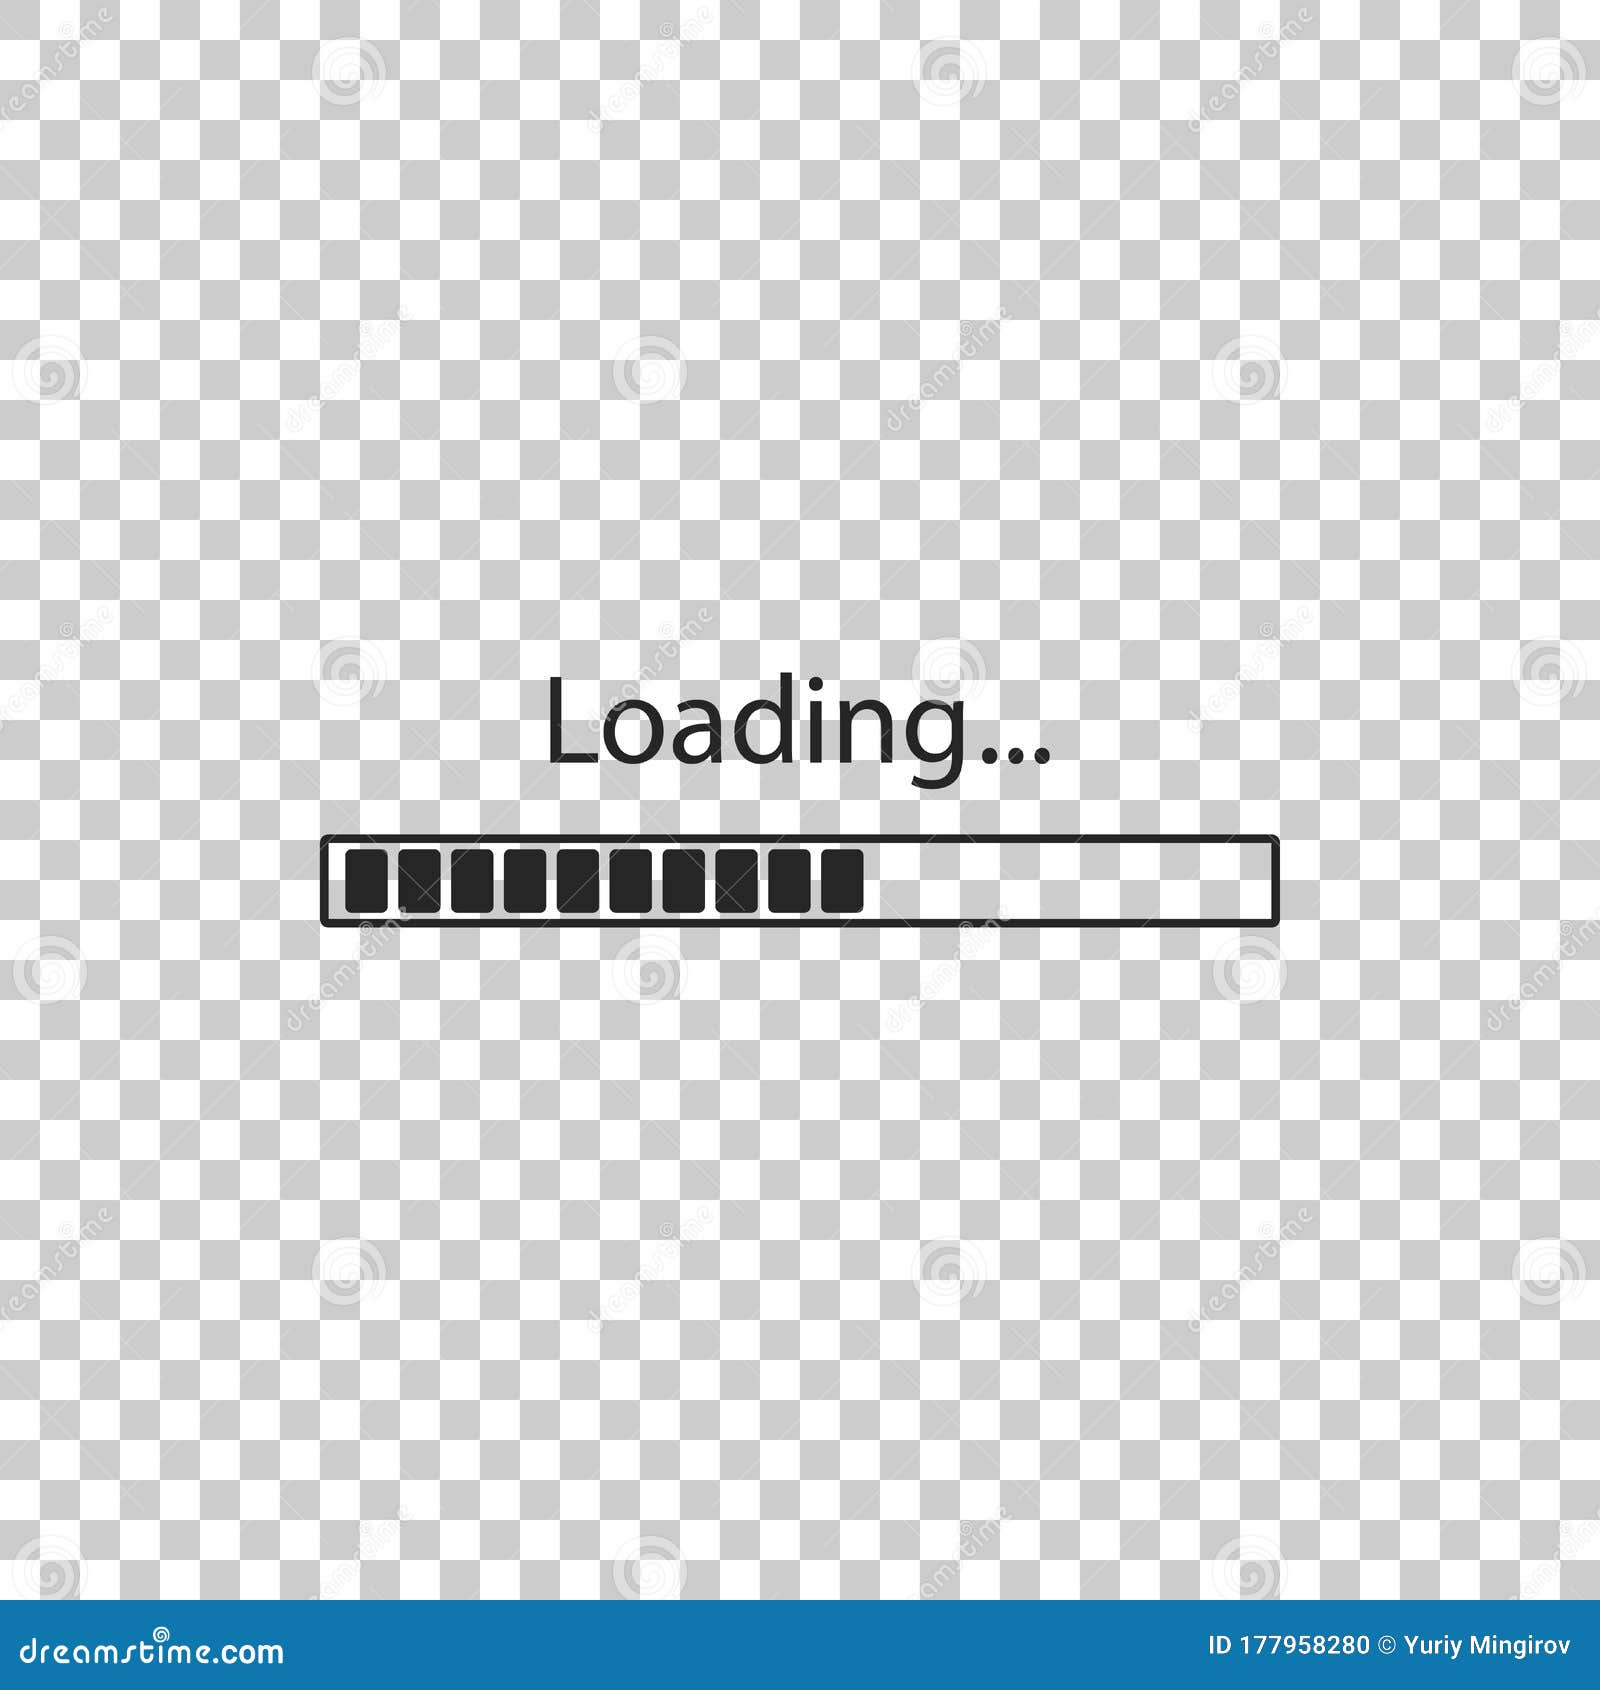 loading icon. loading progress icon on transparent background